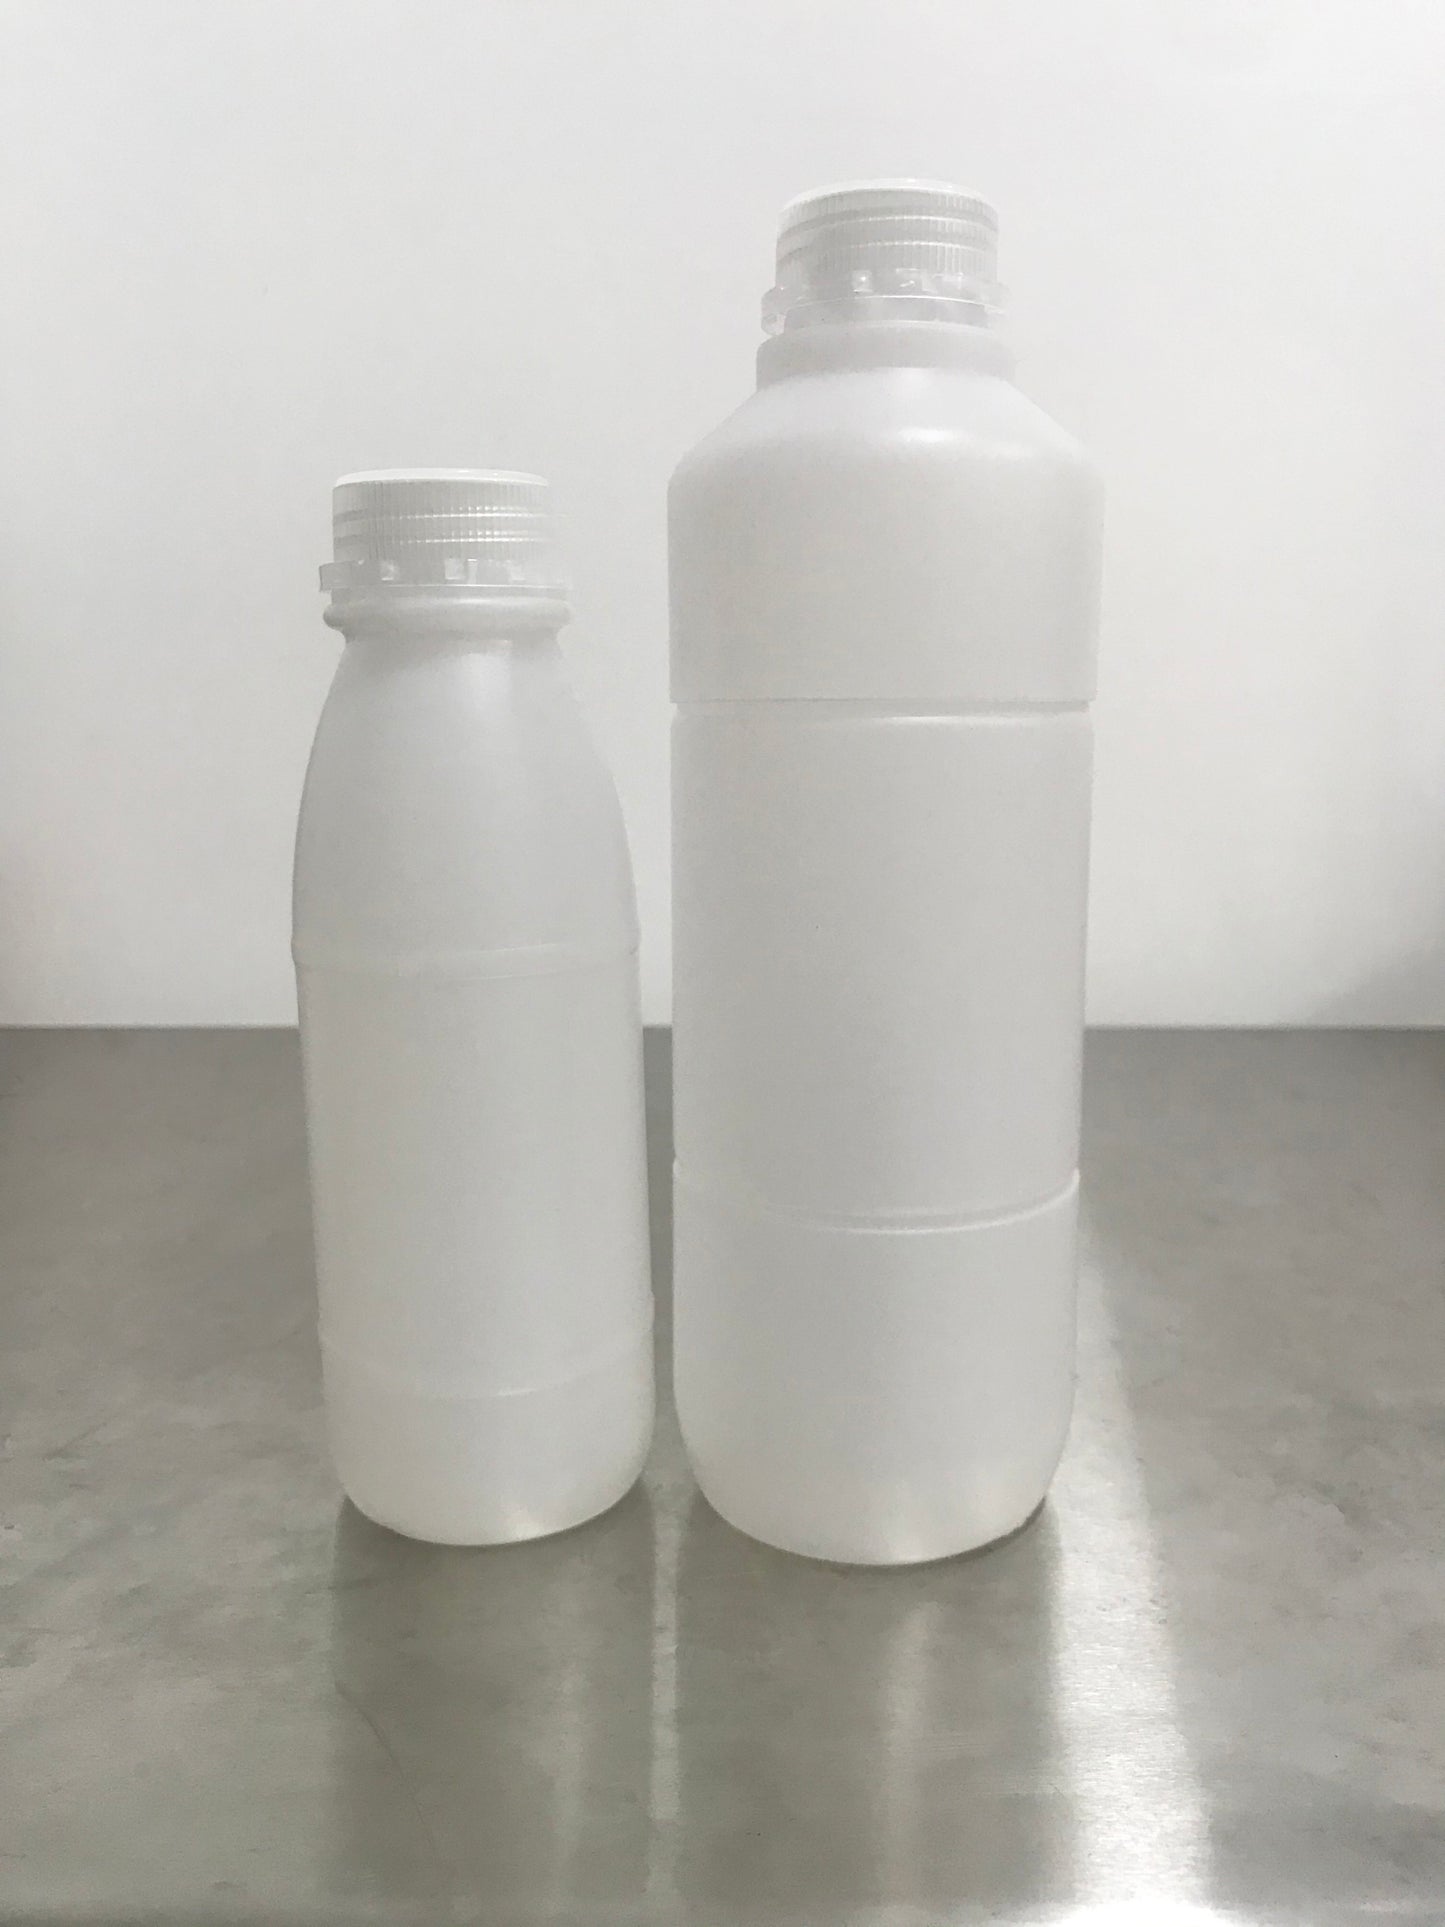 500ml and 1 Liter High Quality Plastic Bottles (Milk Bottles)